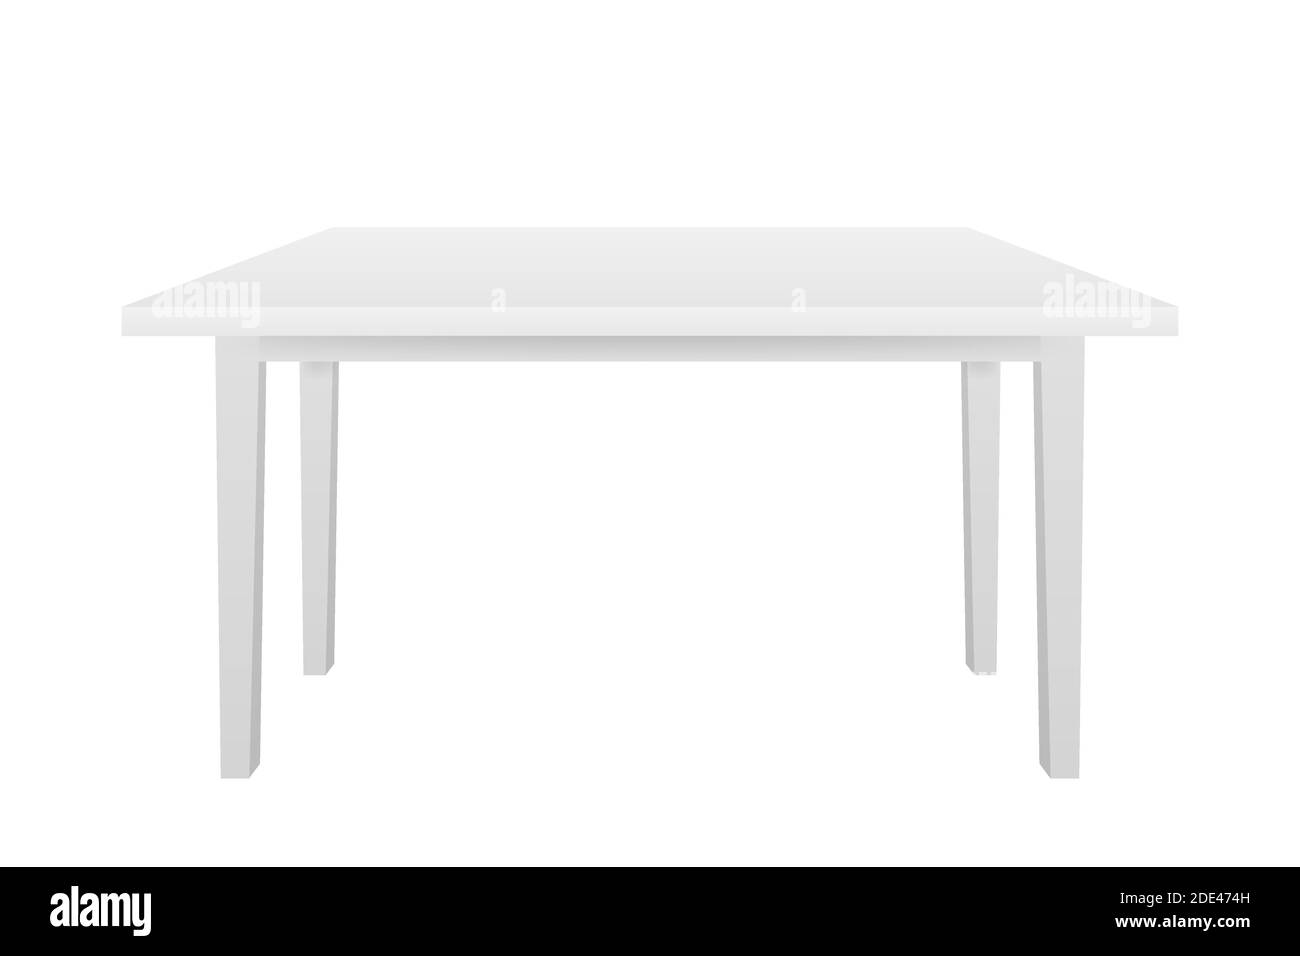 Weißer Tisch, Plattform, Ständer. Vorlage für Objektpräsentation.  Vektorgrafik Stock-Vektorgrafik - Alamy